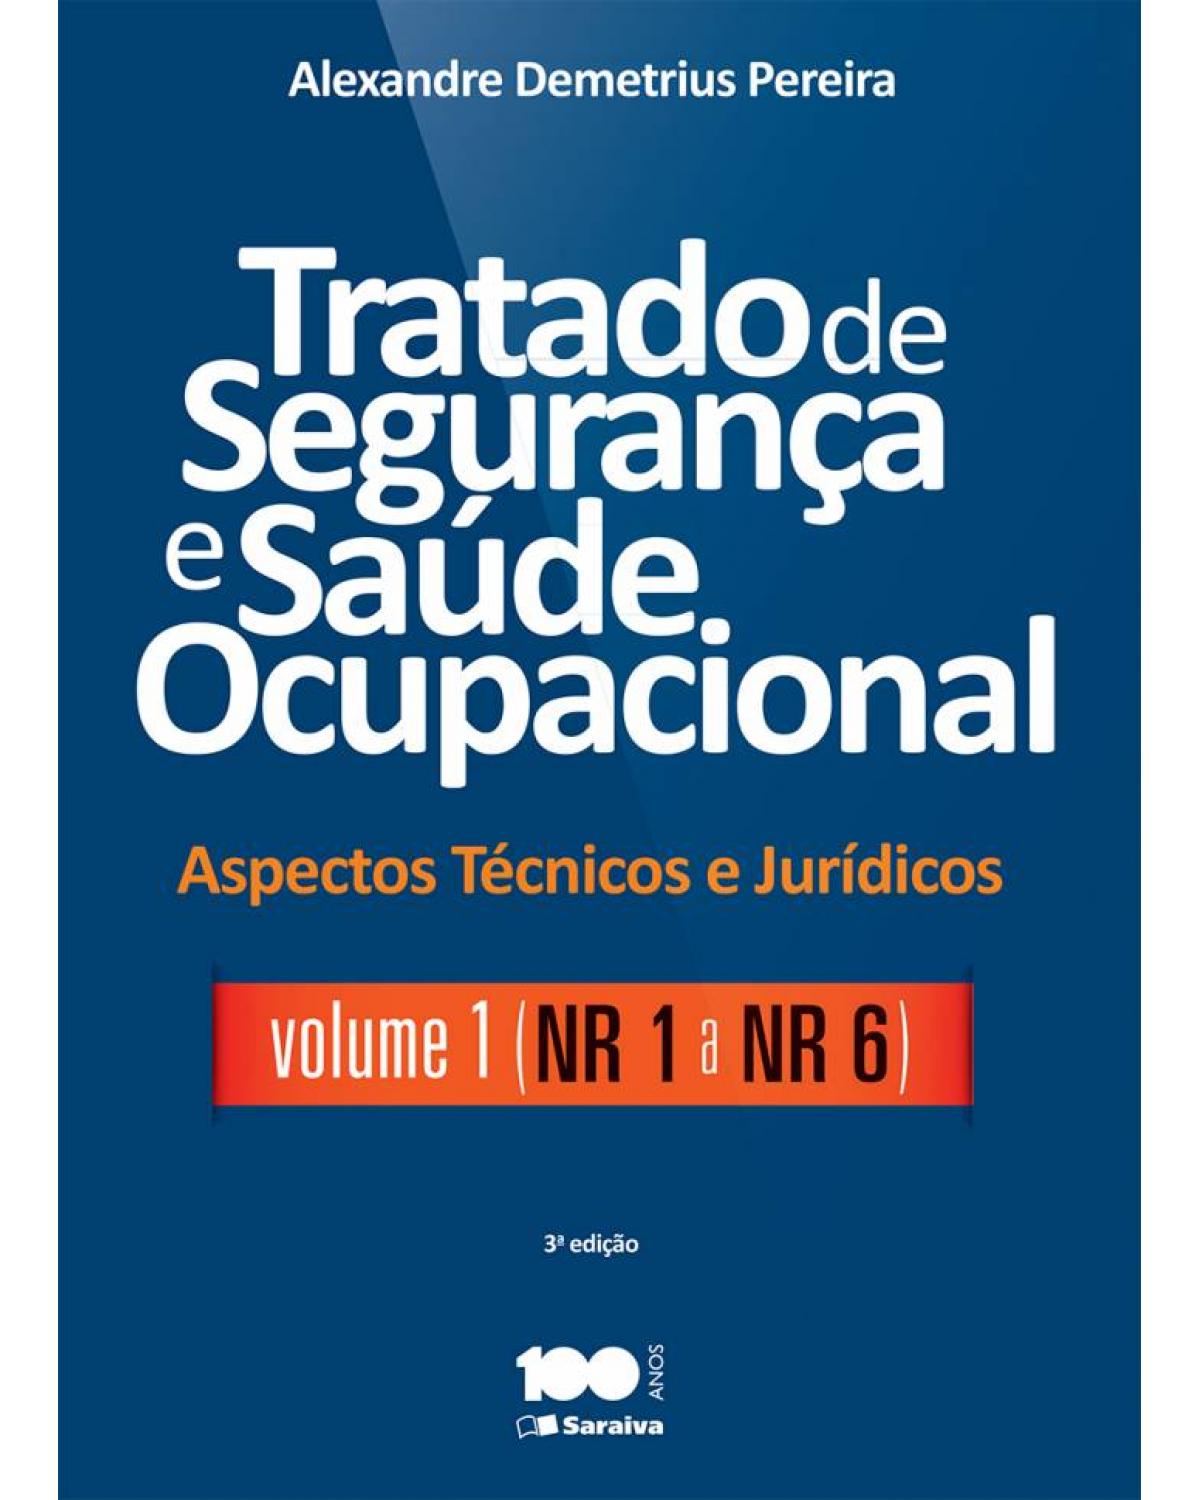 Tratado de segurança e saúde ocupacional - Volume 1: aspectos técnicos e jurídicos - NR 1 a NR 6 - 3ª Edição | 2015